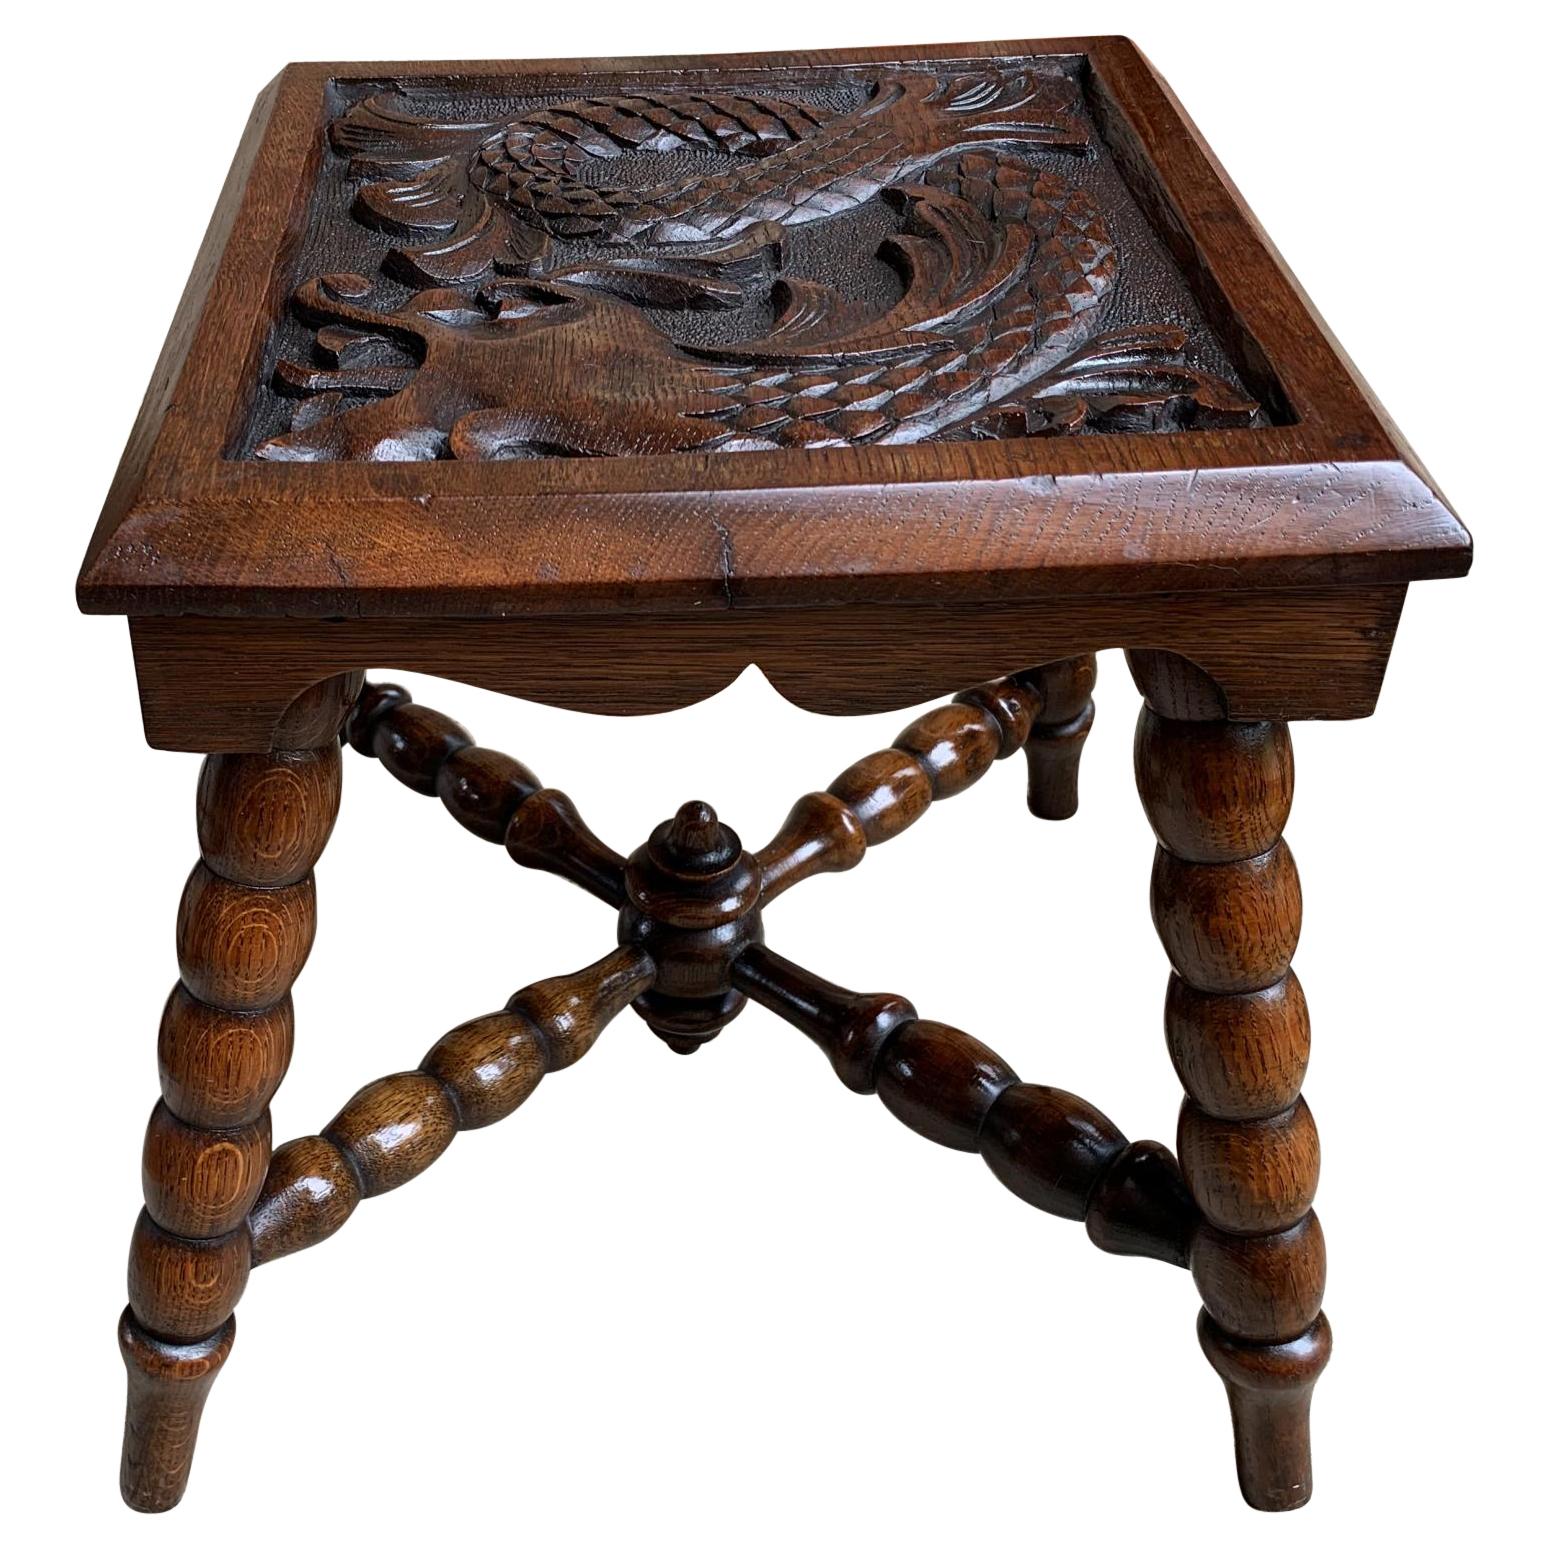 Ancienne table d'extrémité de banc ou bout de table carrée sculptée anglaise Renaissance 